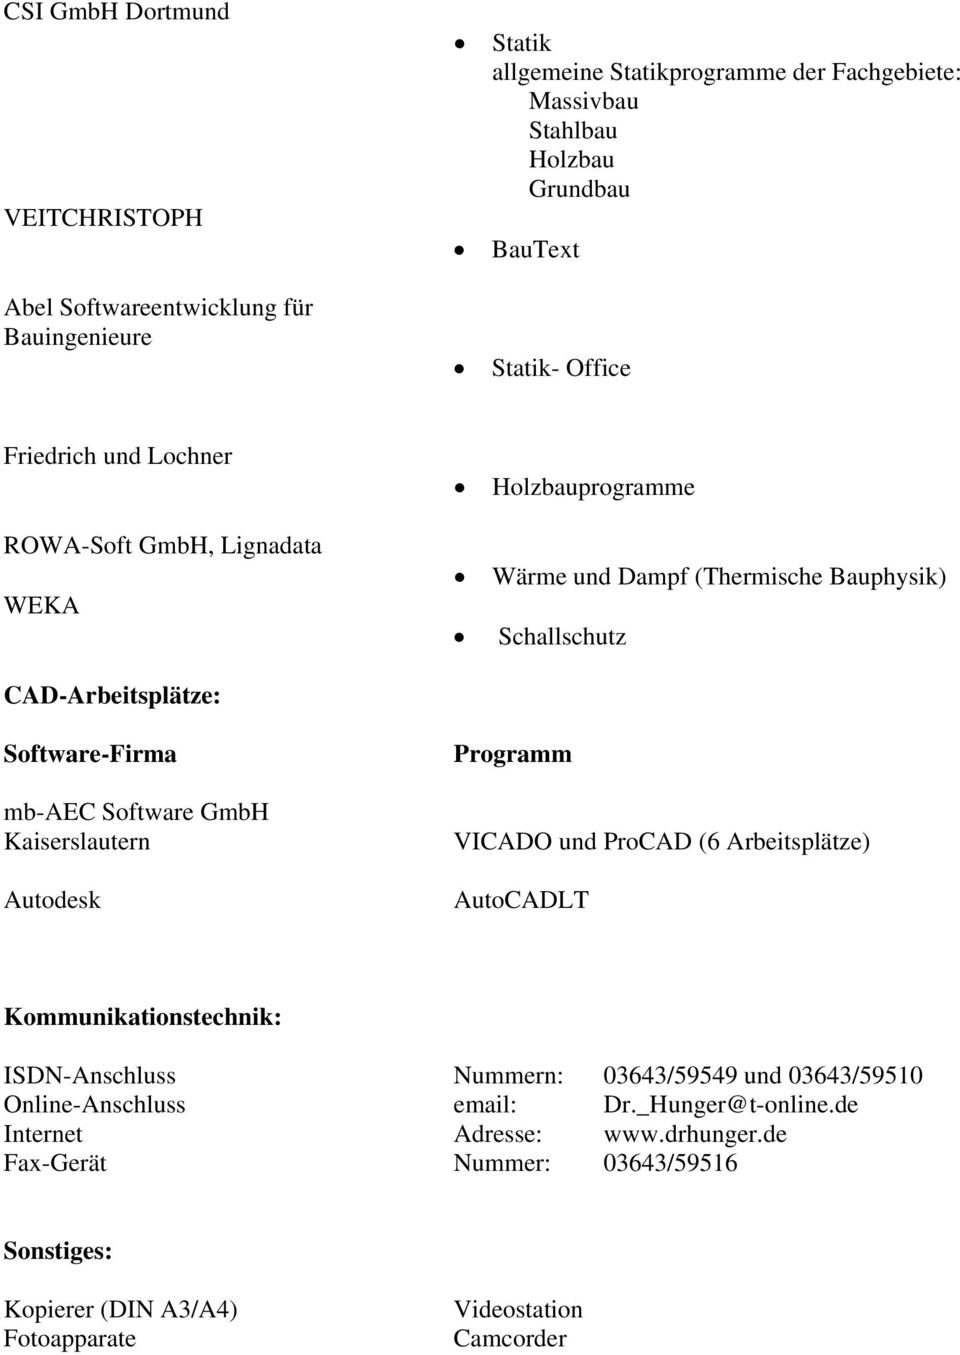 mb-aec Software GmbH Kaiserslautern Autodesk Programm VICADO und ProCAD (6 Arbeitsplätze) AutoCADLT Kommunikationstechnik: ISDN-Anschluss Nummern: 03643/59549 und